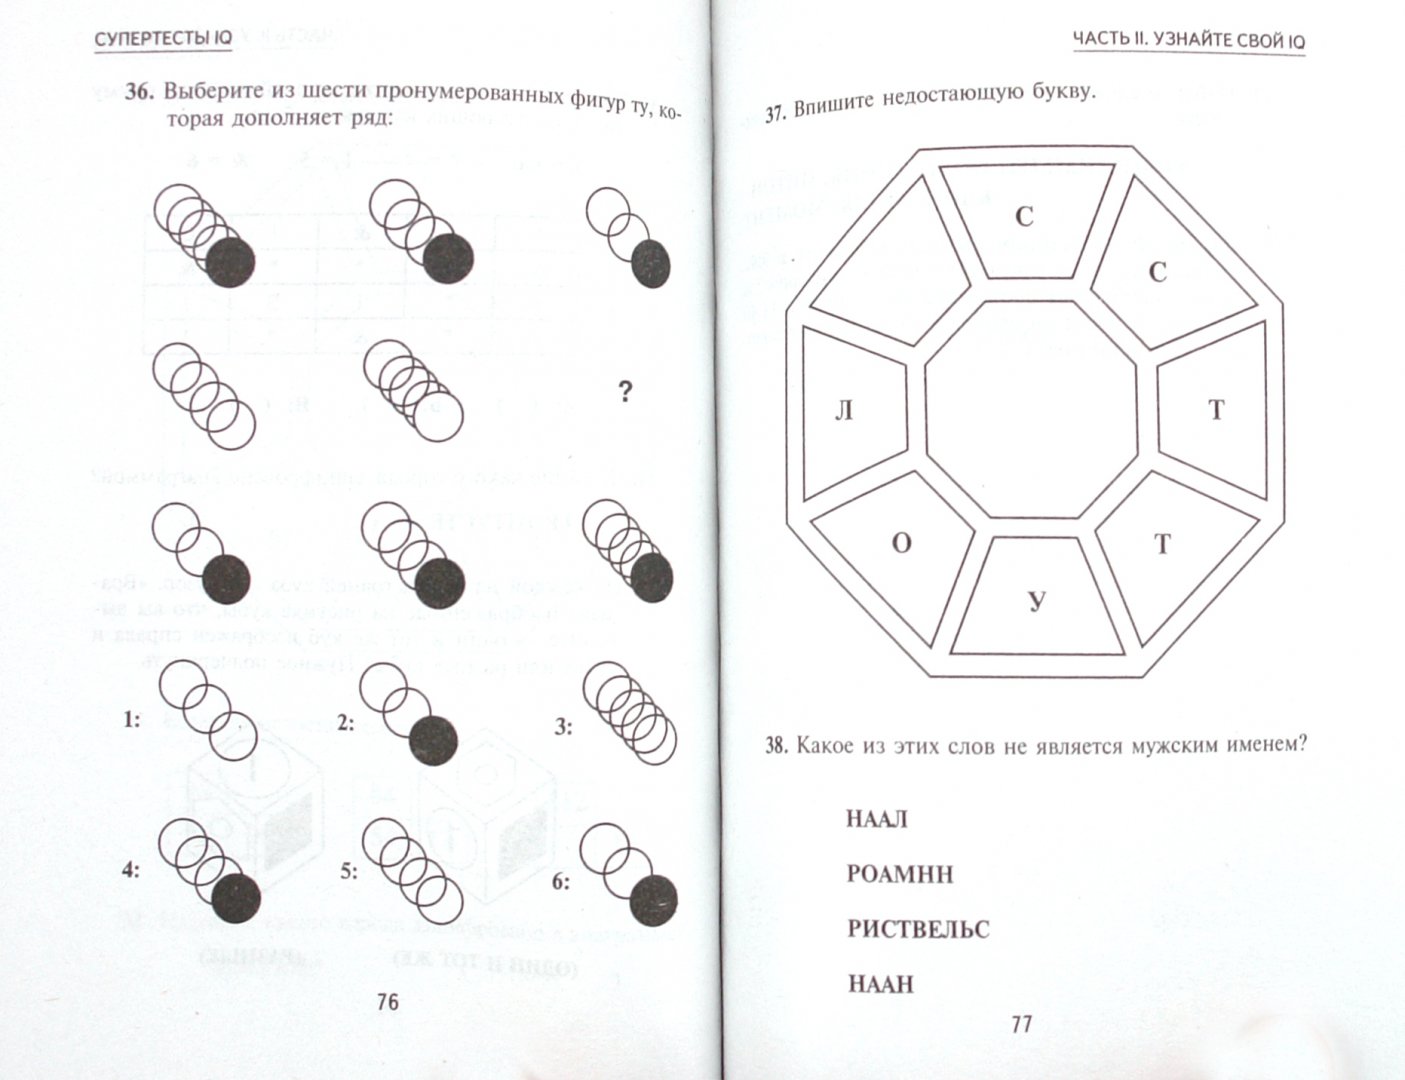 Иллюстрация 2 из 2 для Супертесты IQ - Ганс Айзенк | Лабиринт - книги. Источник: Лабиринт